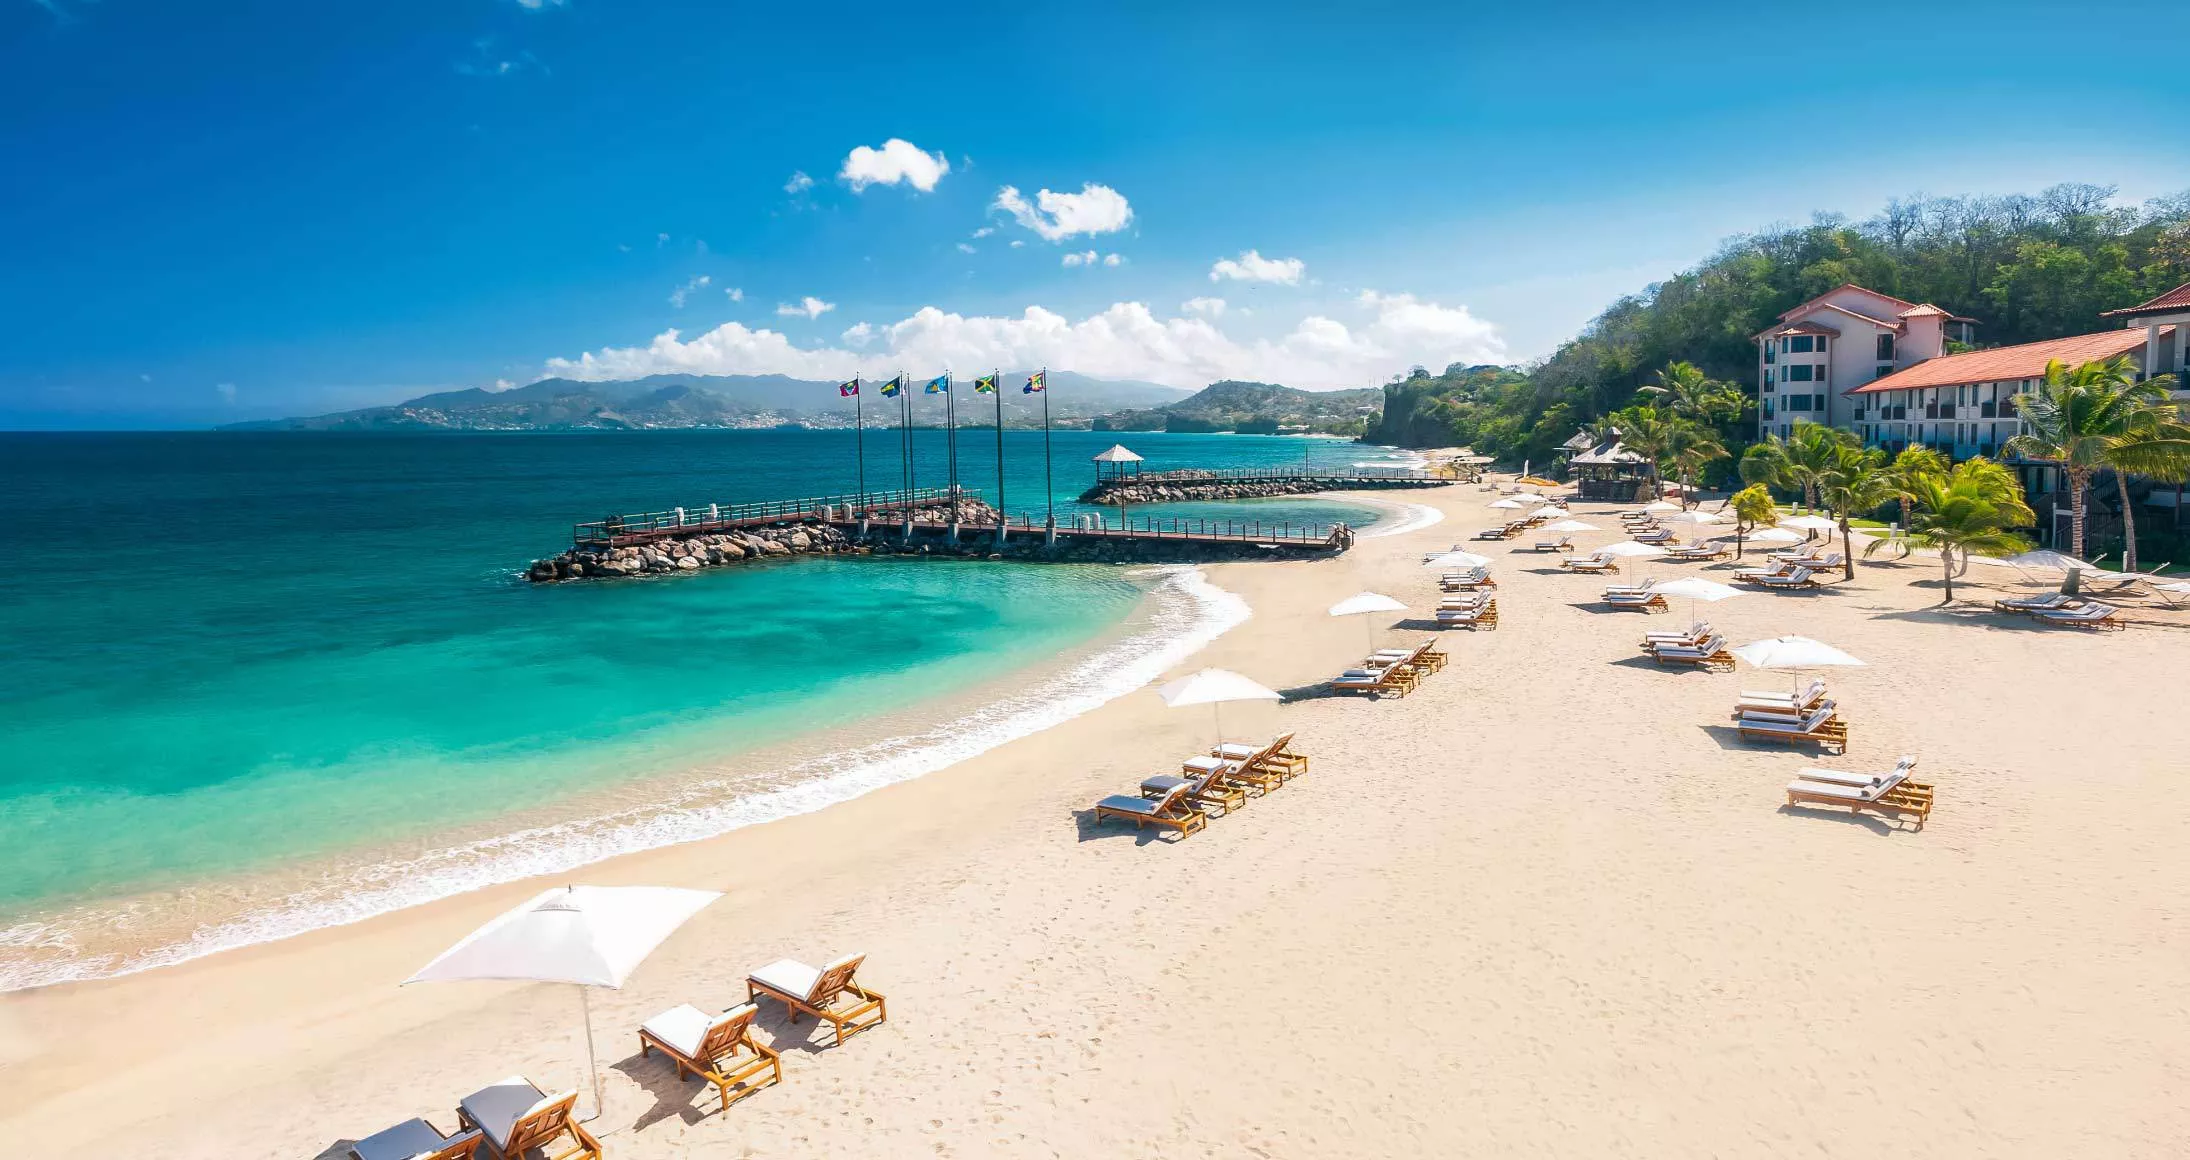 Sandals LaSource Grenada Resort & Spa in Grenada, Caribbean | Sex Hotels - Rated 3.8